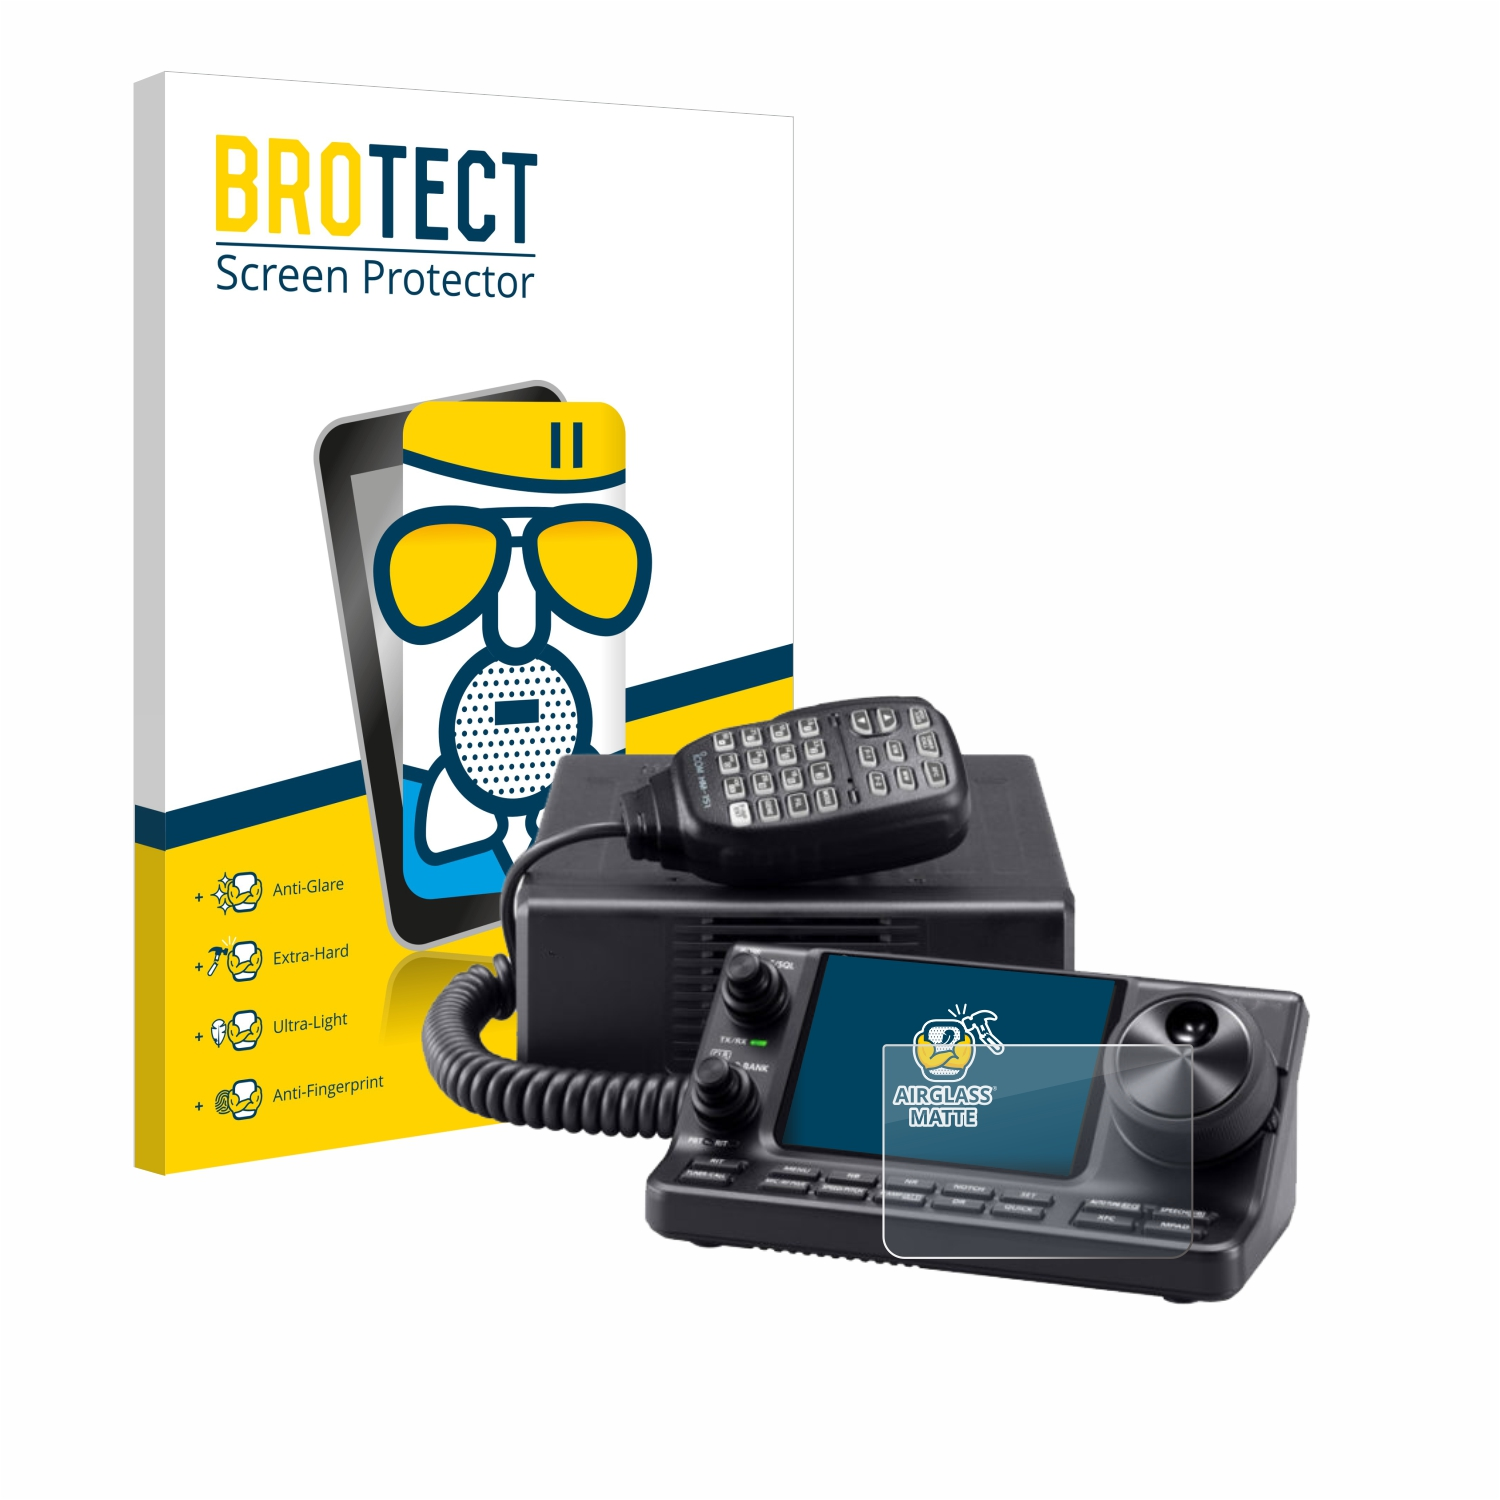 BROTECT Airglass matte IC-7100) Icom Schutzfolie(für